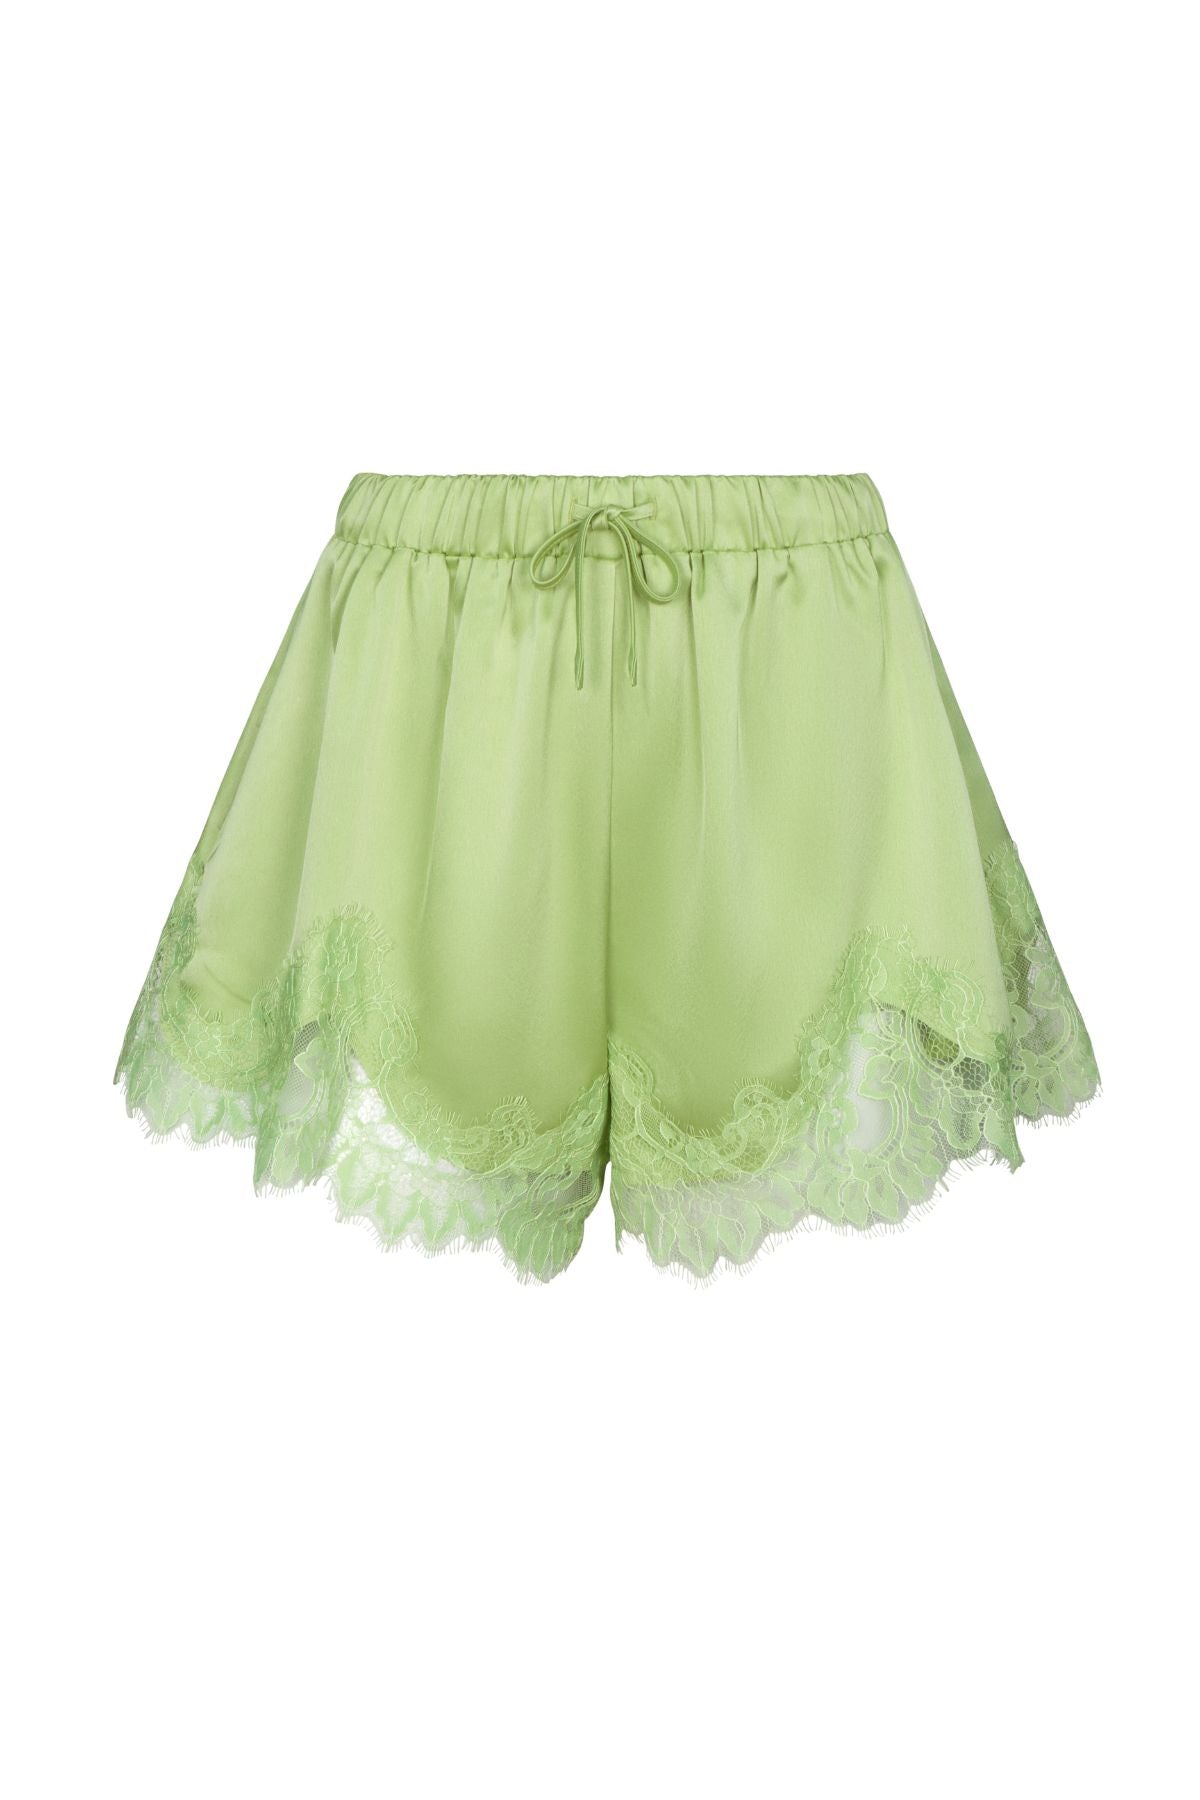 LEOLA Lime Lace Shorts